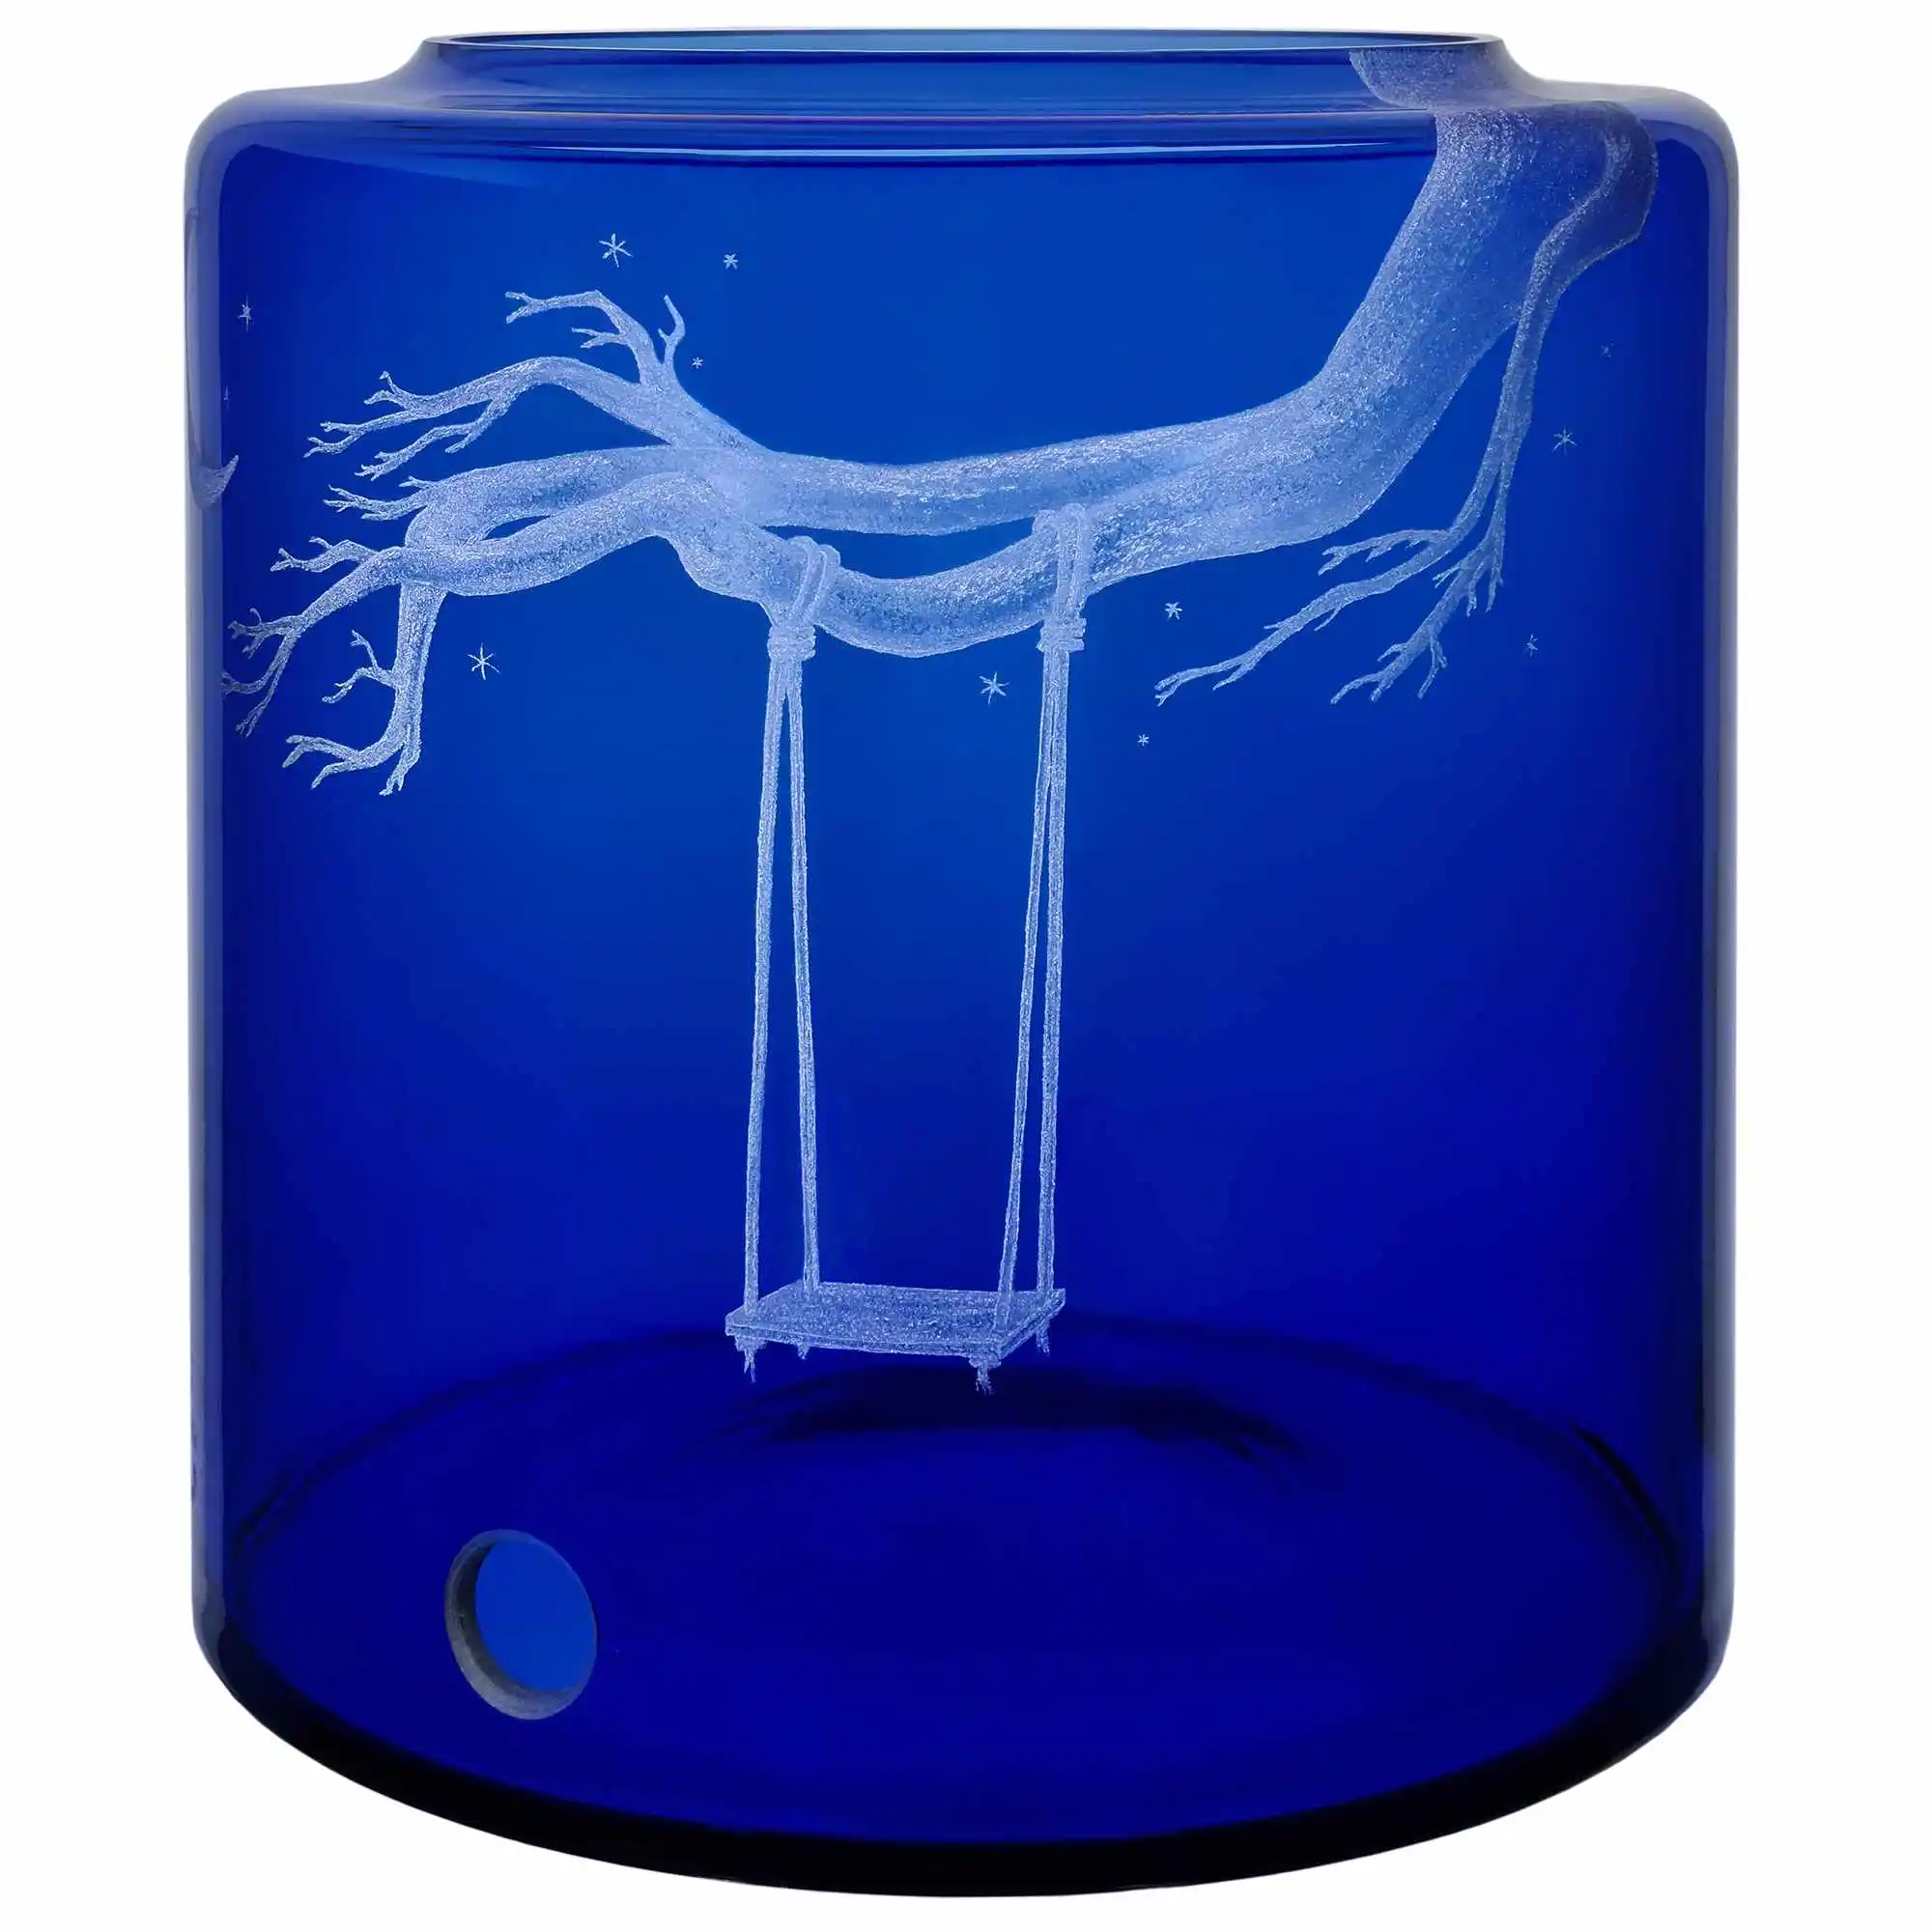 Glas- Vorratstank für einen Acala Wasserfilter Mini mit einer Handgravur. Die Gravur zeigt, auf blauem Glas, einen starken Ast eines Baumes an dem eine Schaukel mit einem langen Seil befestigt ist. 